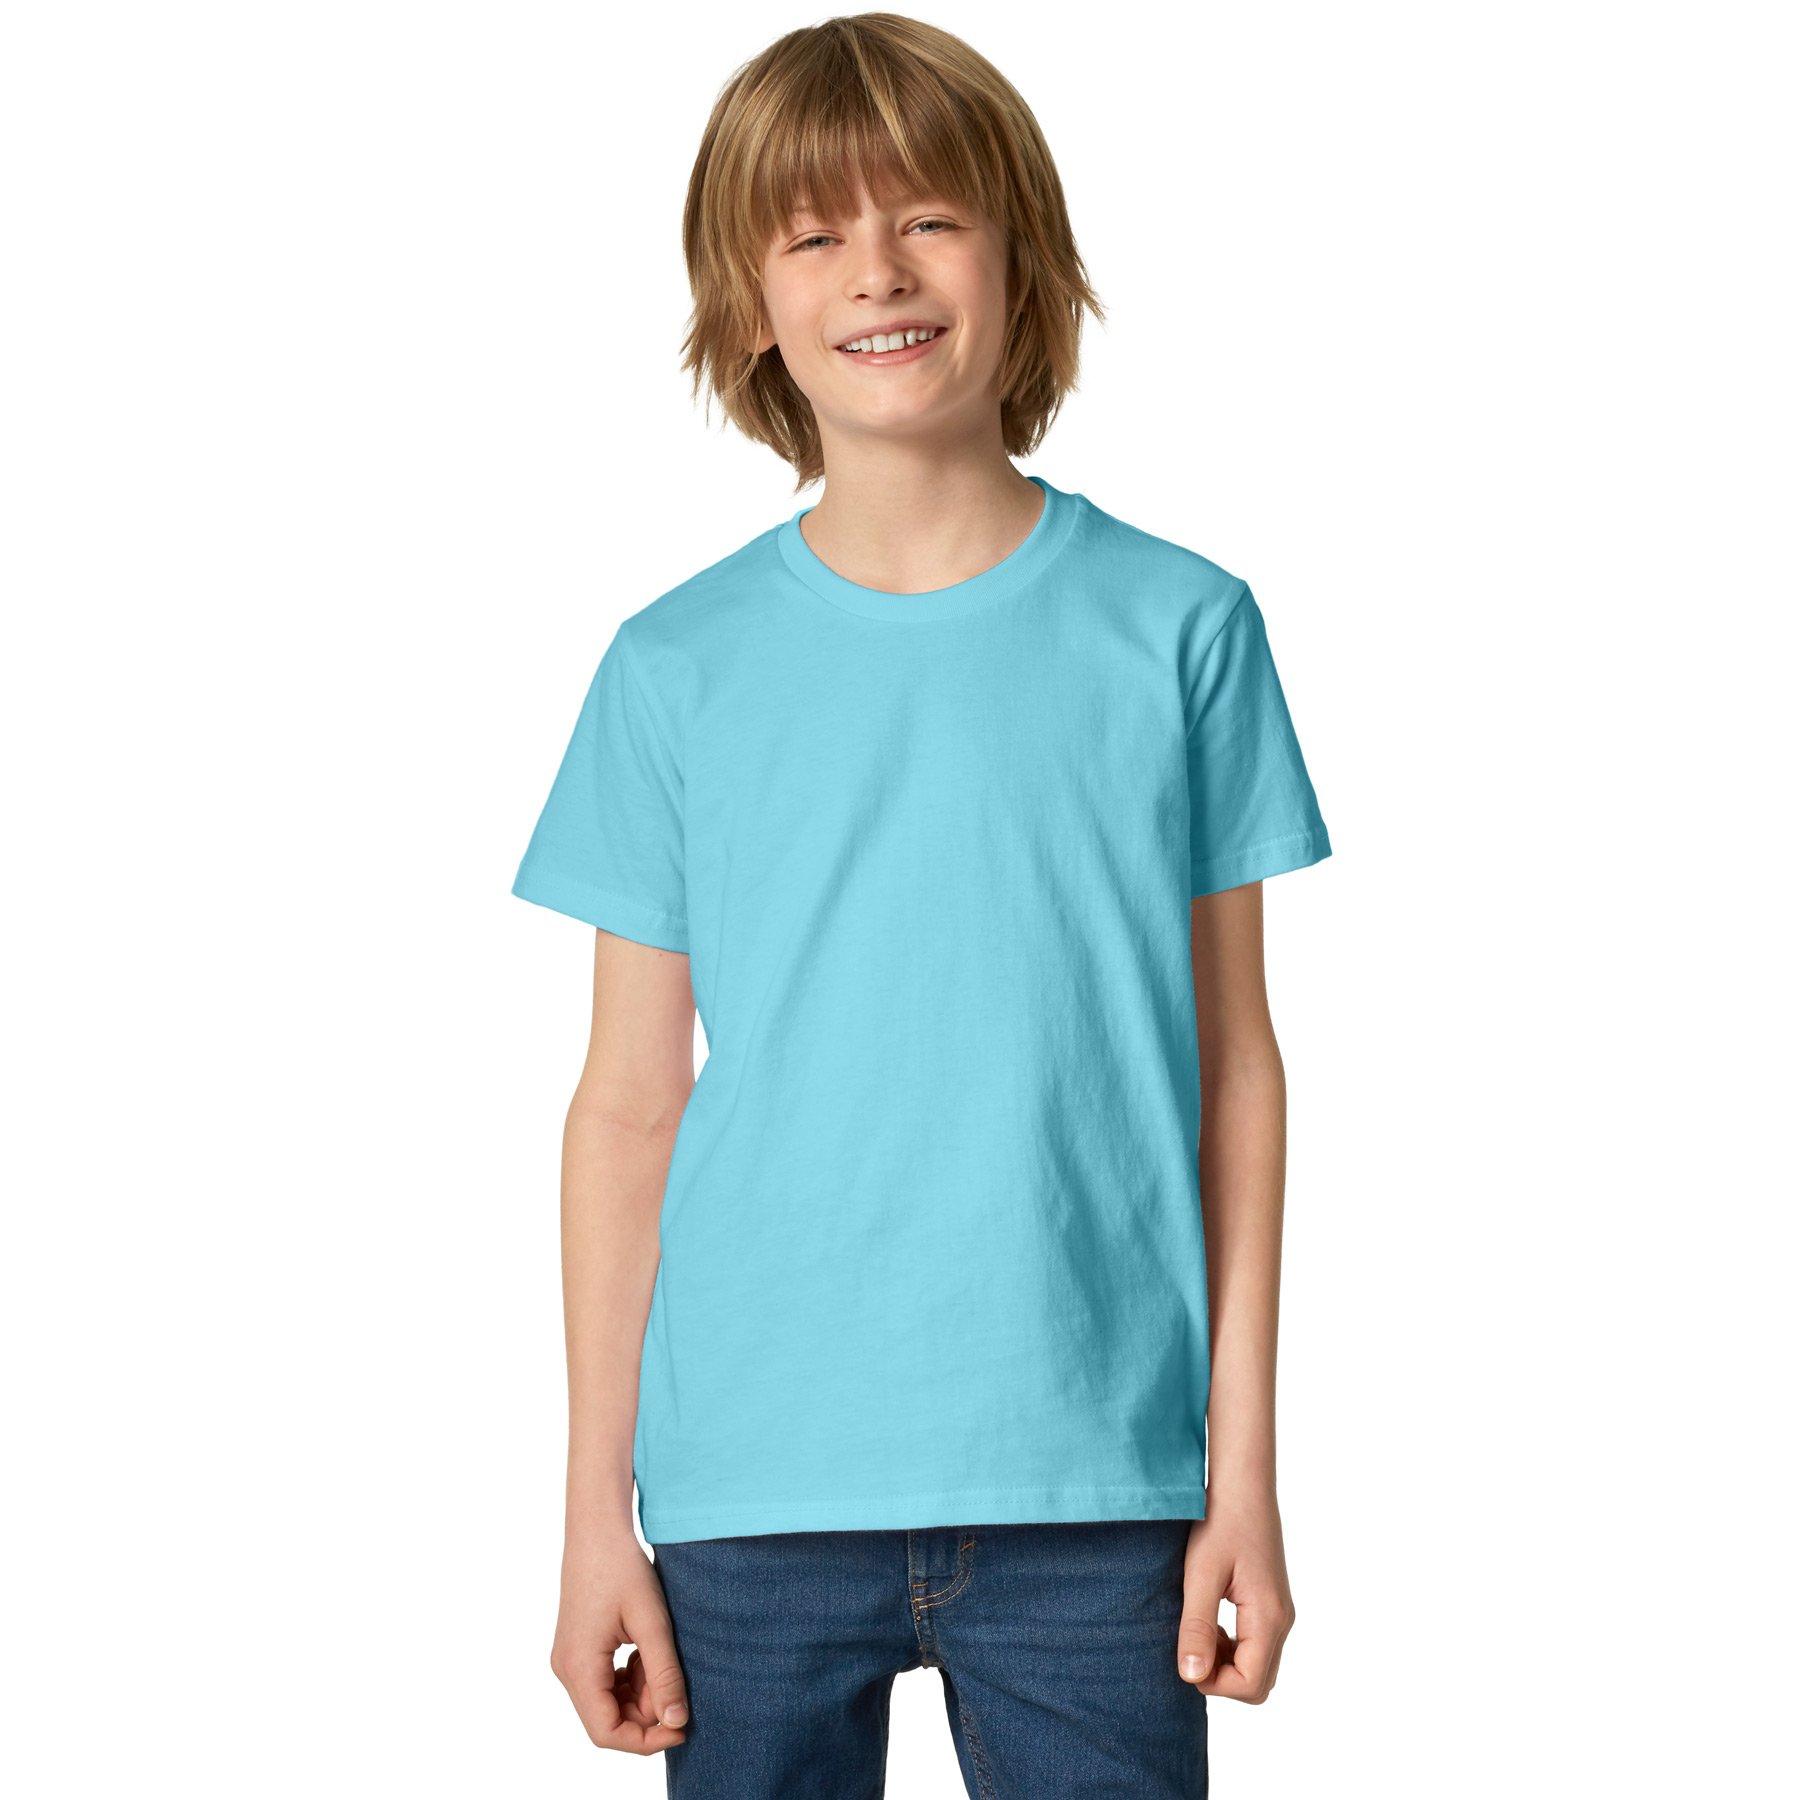 T-shirt Kinder Jungen Hellblau 116 von Tectake